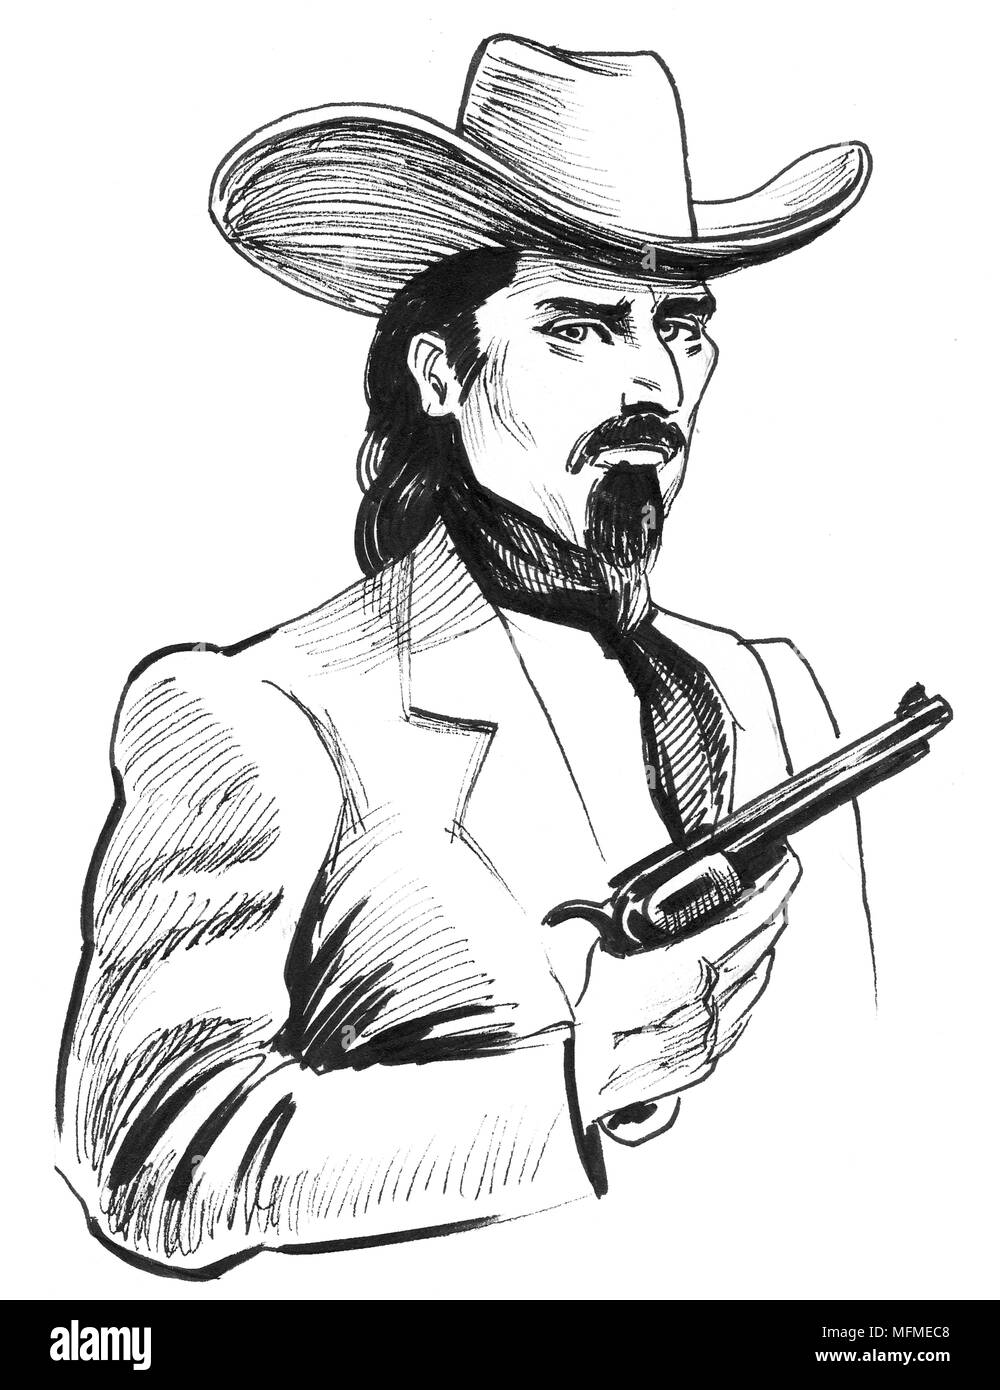 Wild w est Charakter mit einem Revolver Pistole. Tinte schwarz-weiss Zeichnung Stockfoto